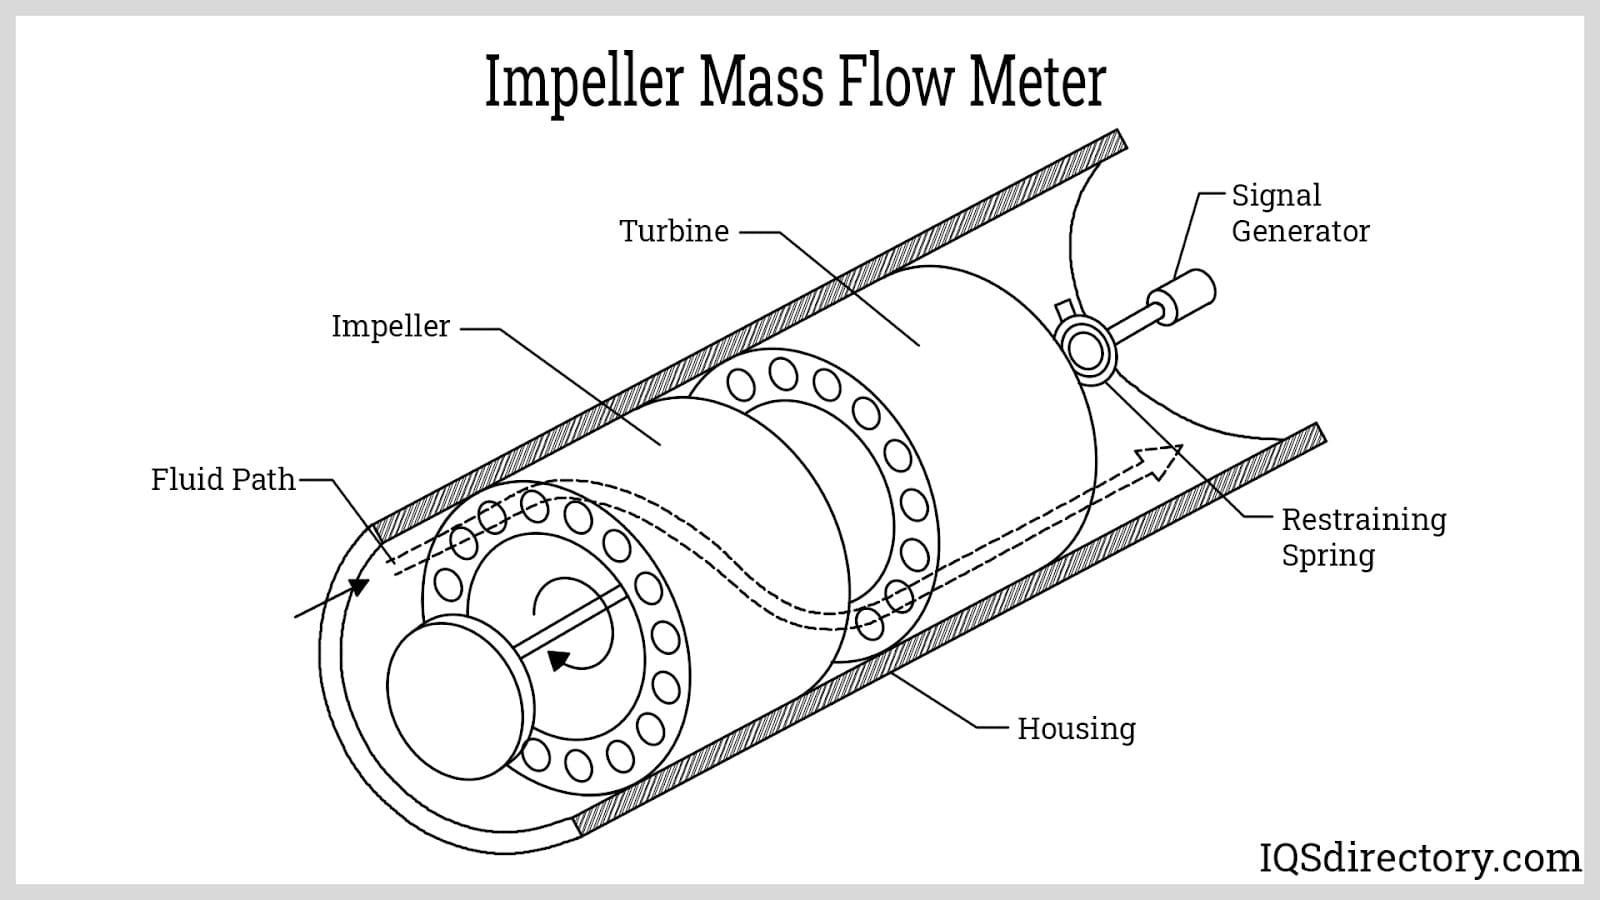 Impeller Mass Flow Meter